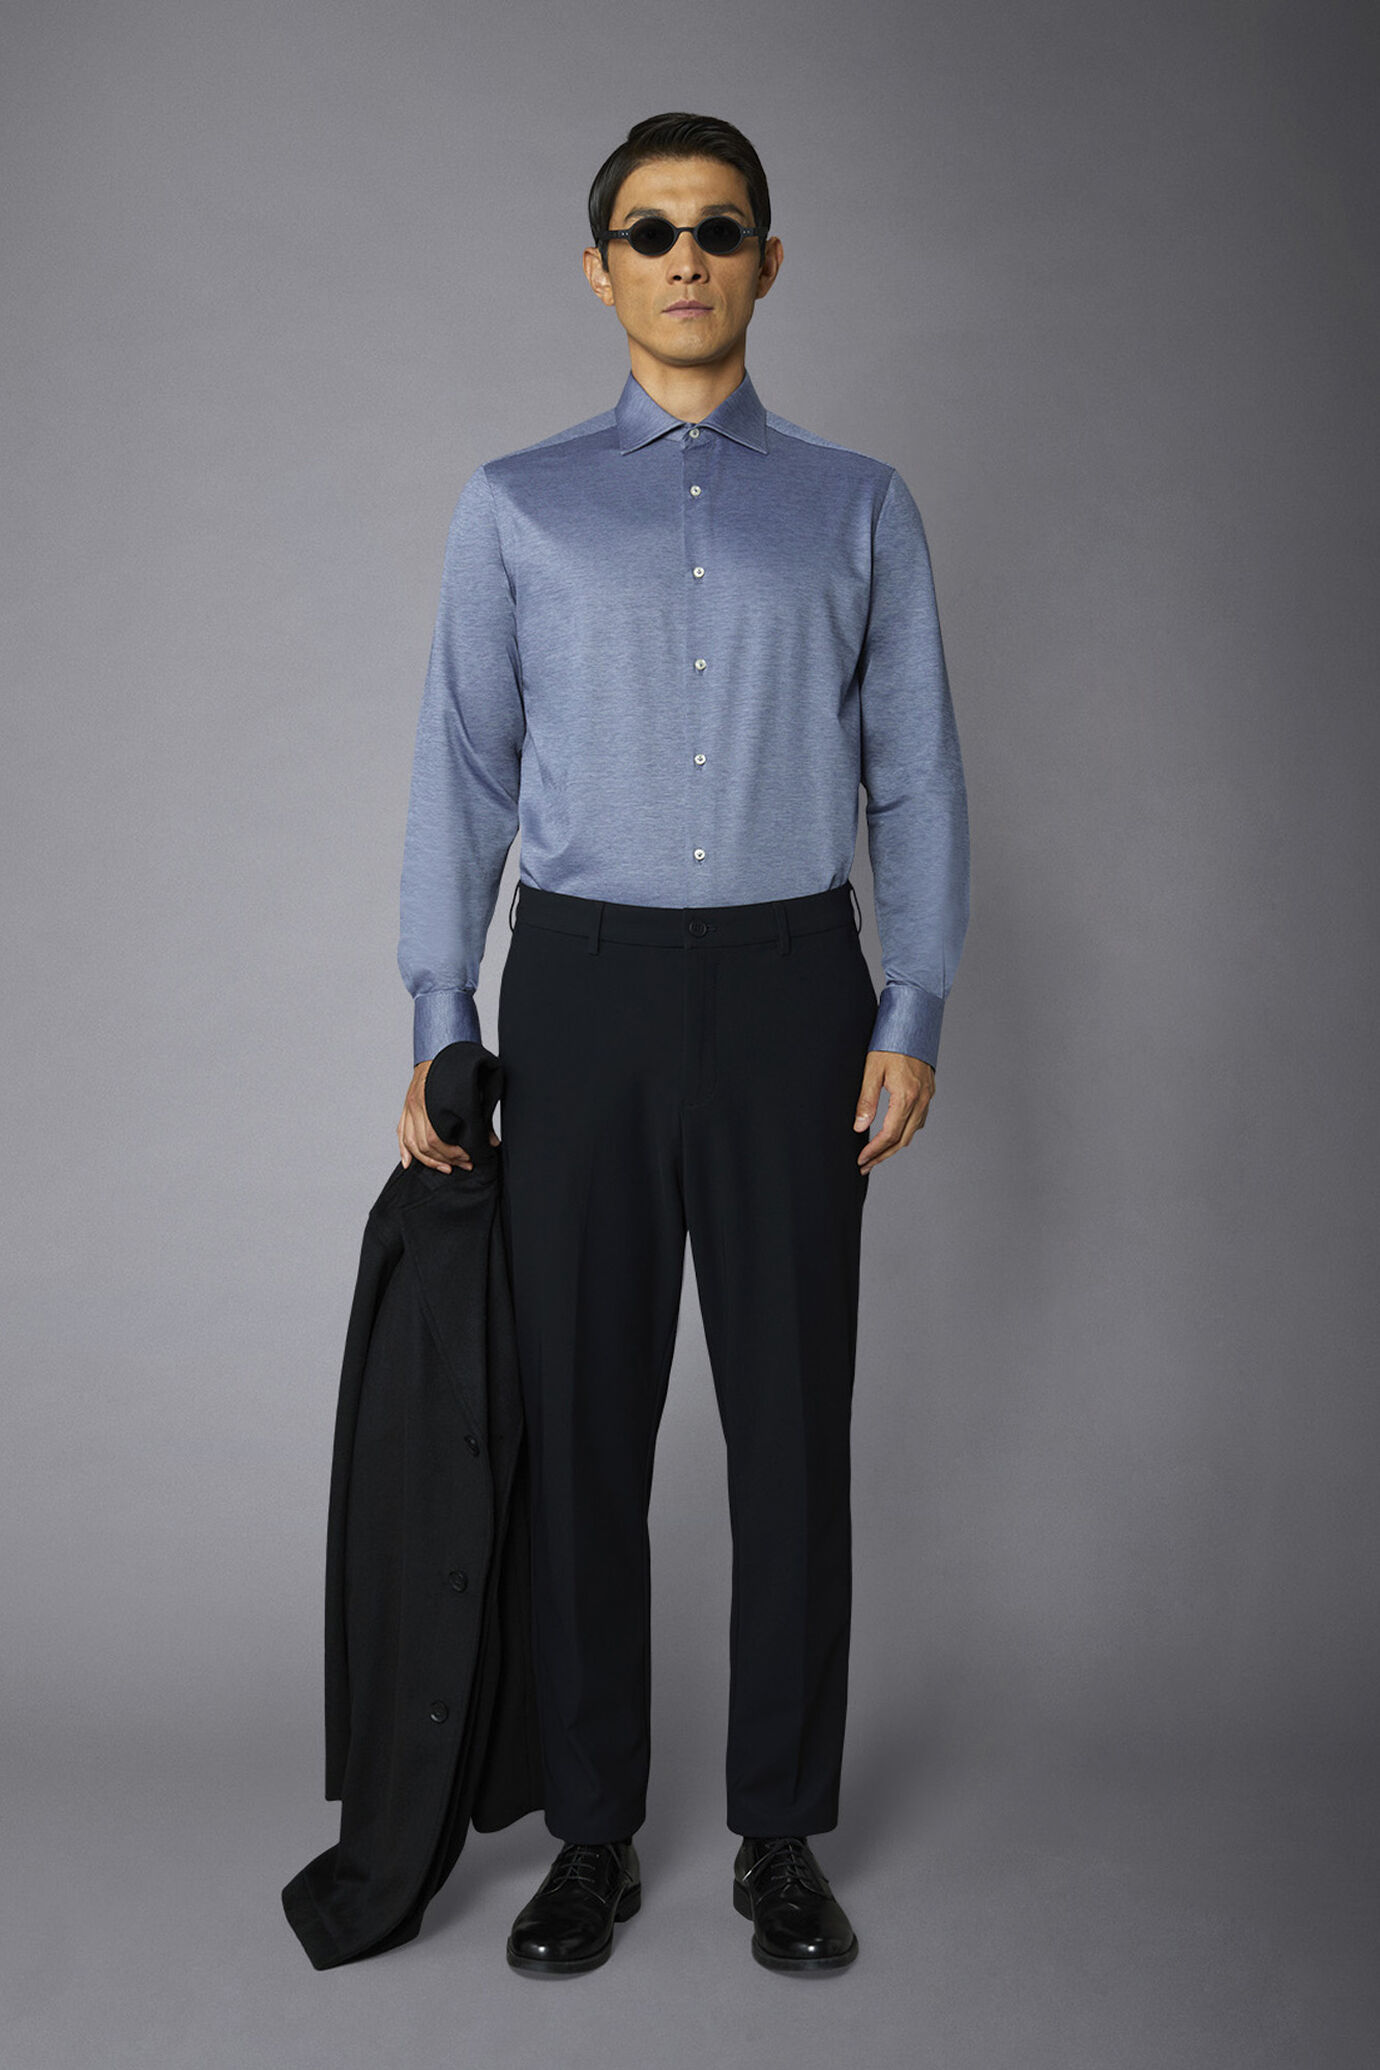 Pantalone chino uomo tessuto in nylon elasticizzato comfort fit